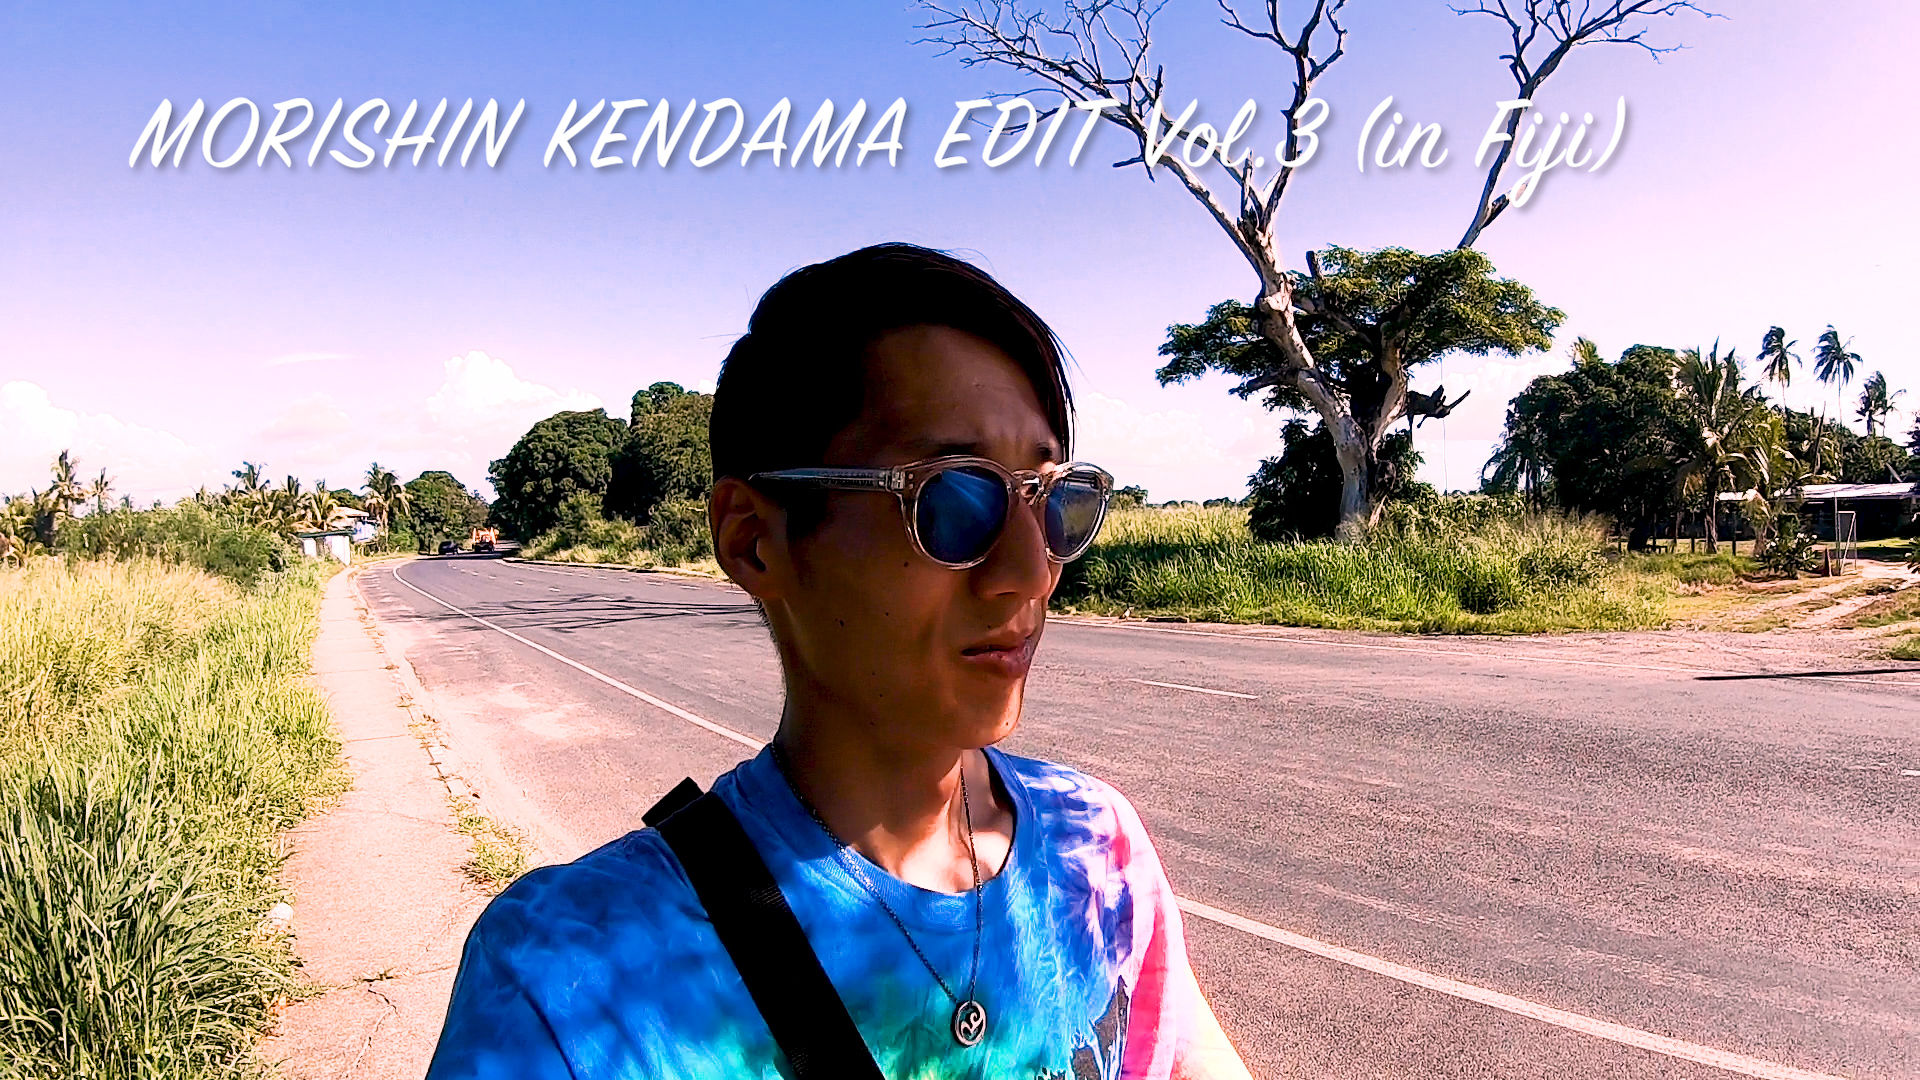 morishin kendama edit #3 (in Fiji)